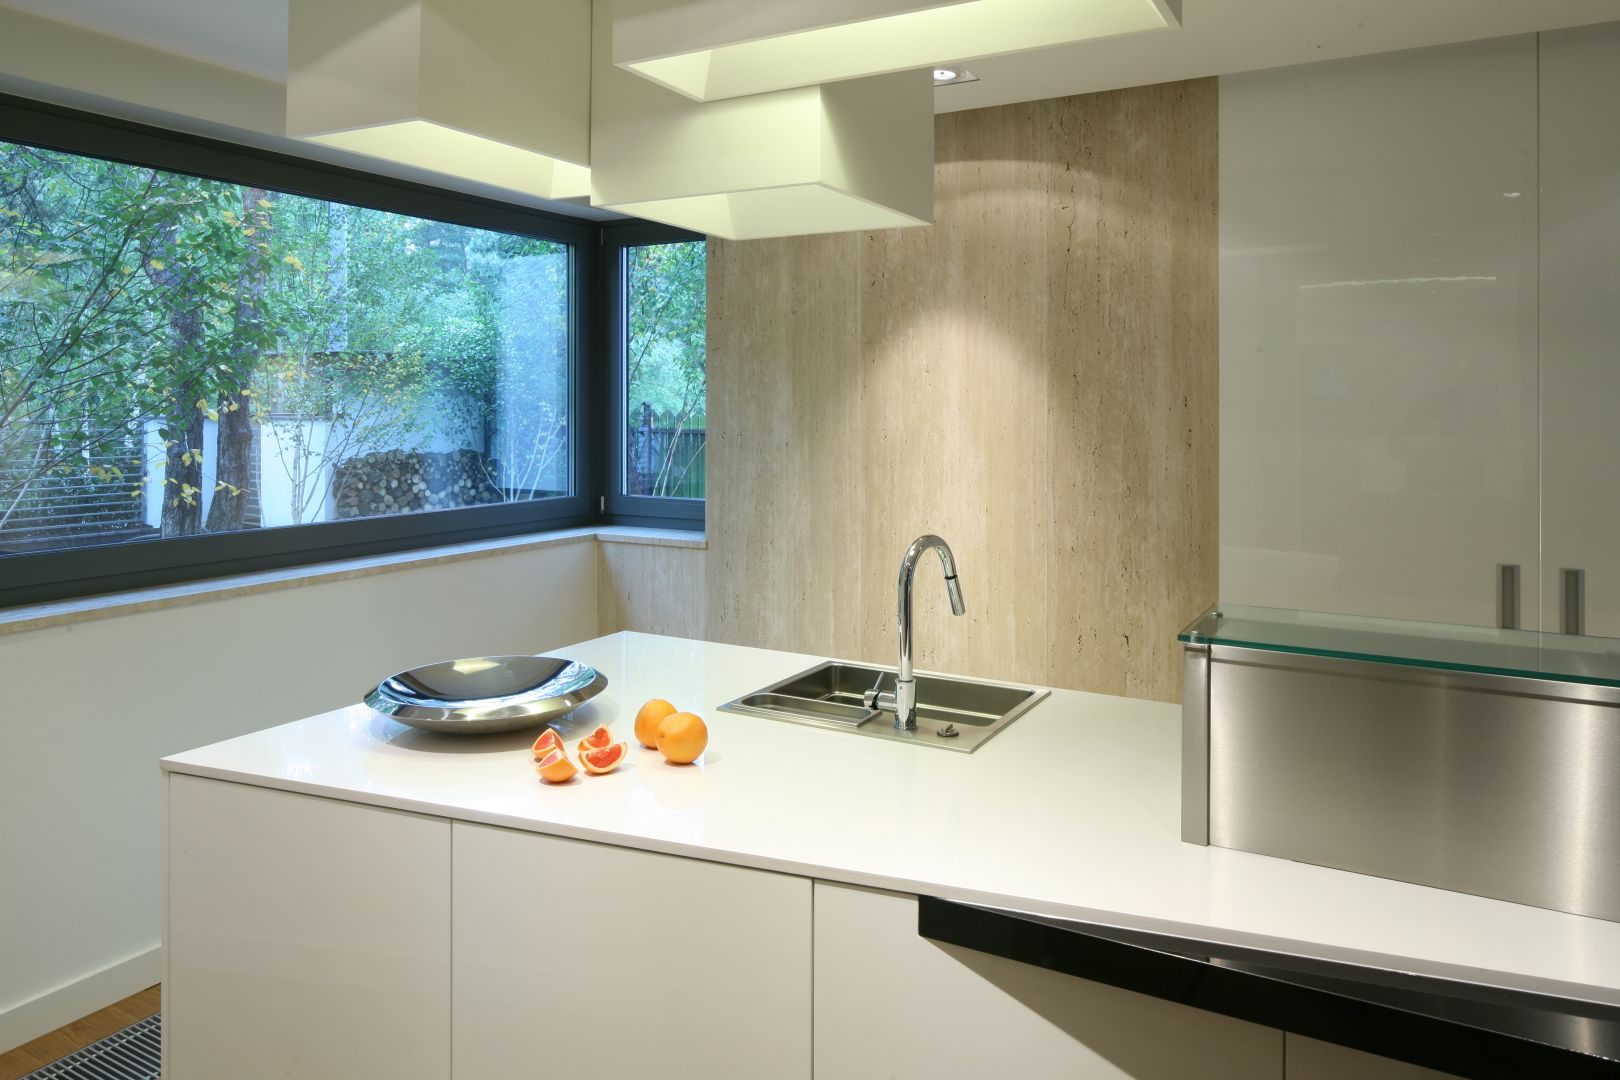 Reprezentacyjna część kuchni urządzona jest
w stylu minimalistycznym. Dominującą kompozycję bieli i czerni ociepla podłoga z dębowych desek. 